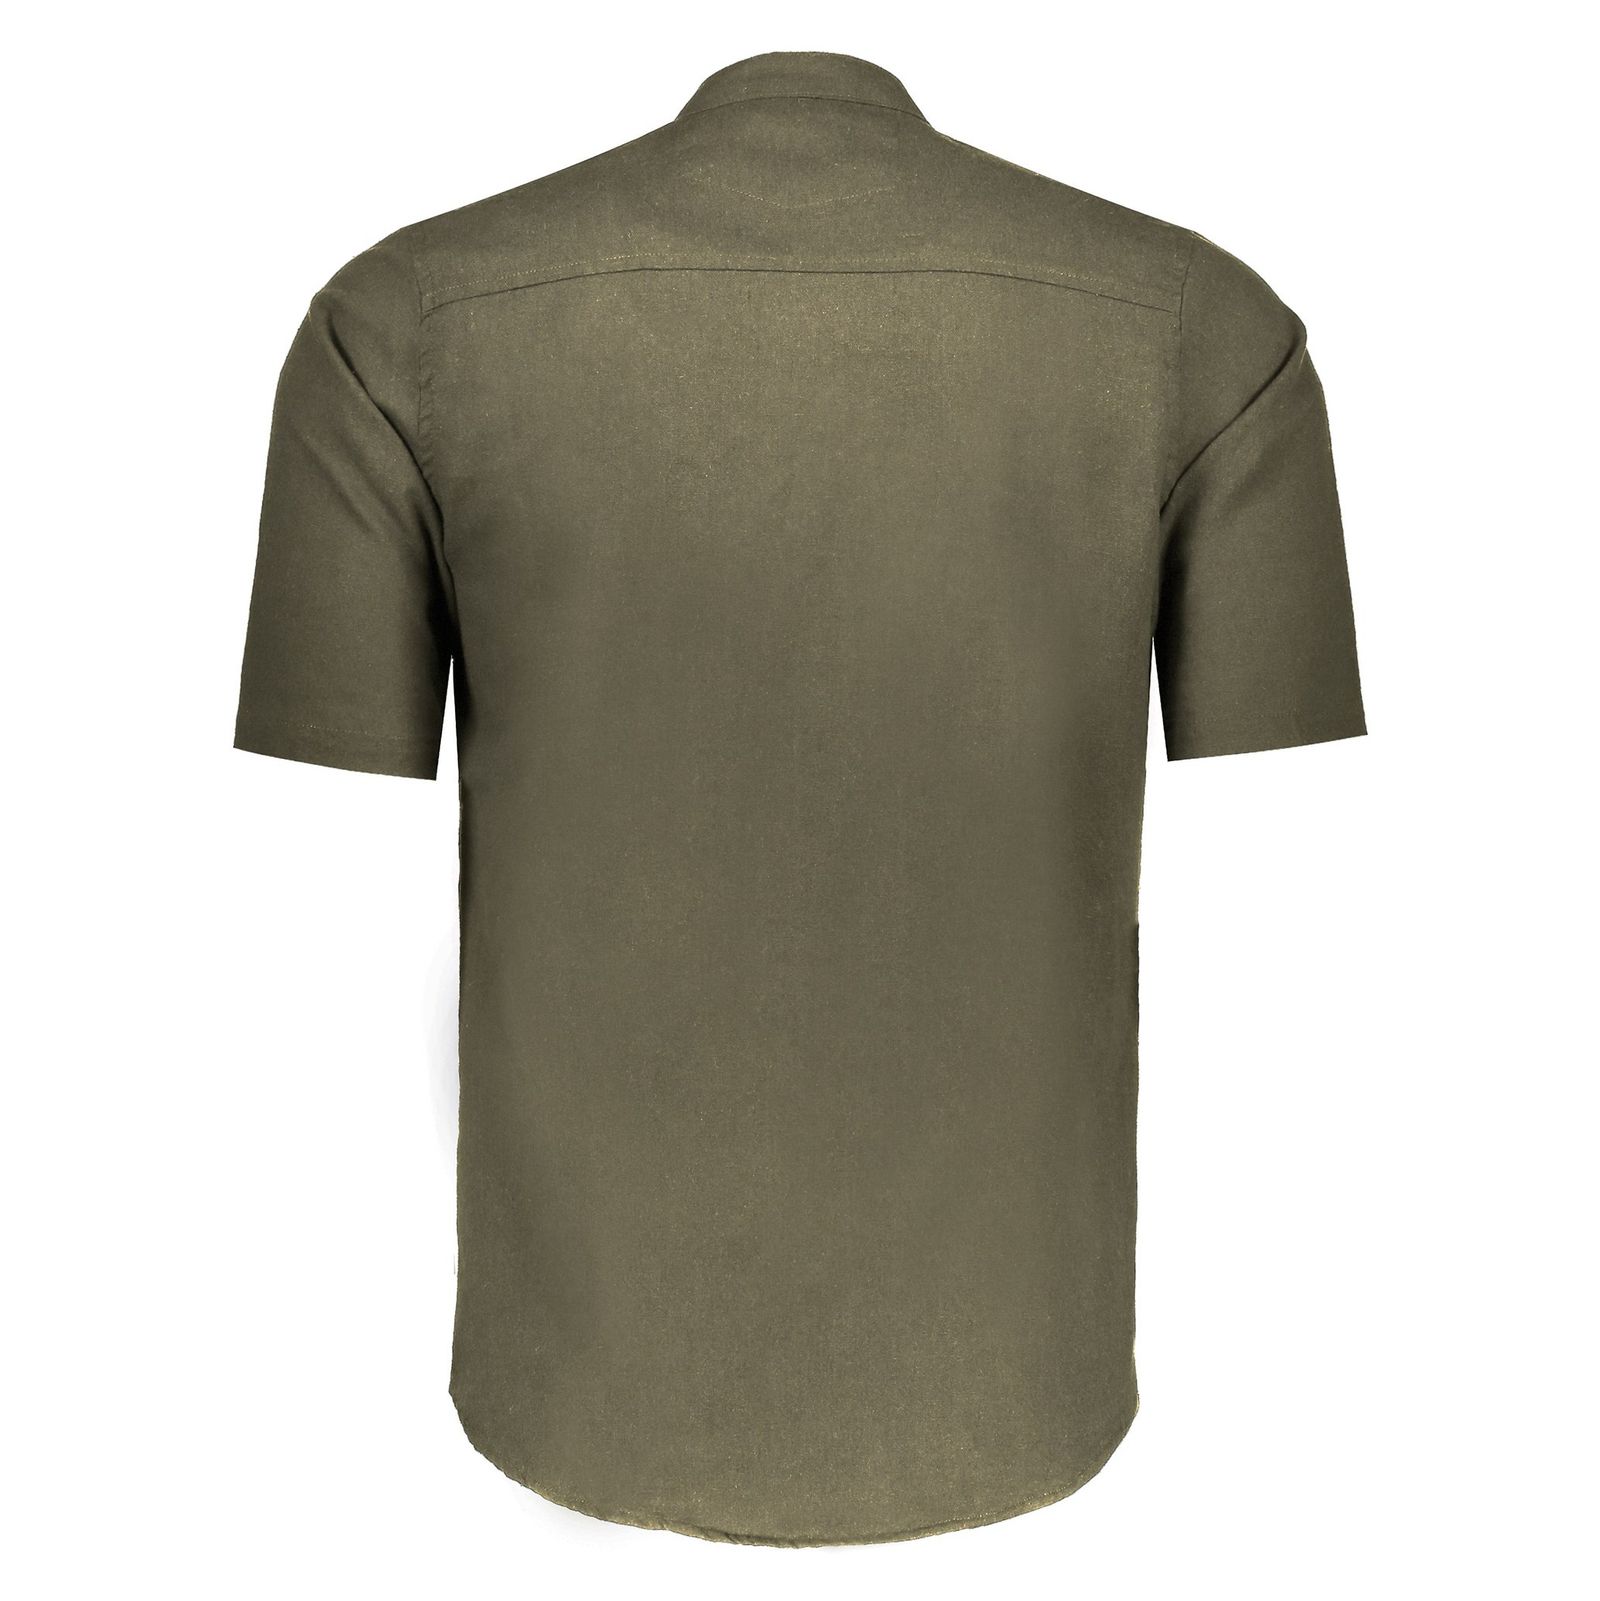 پیراهن آستین کوتاه مردانه مدل آستیاک - تن درست - سبز تيره - 3